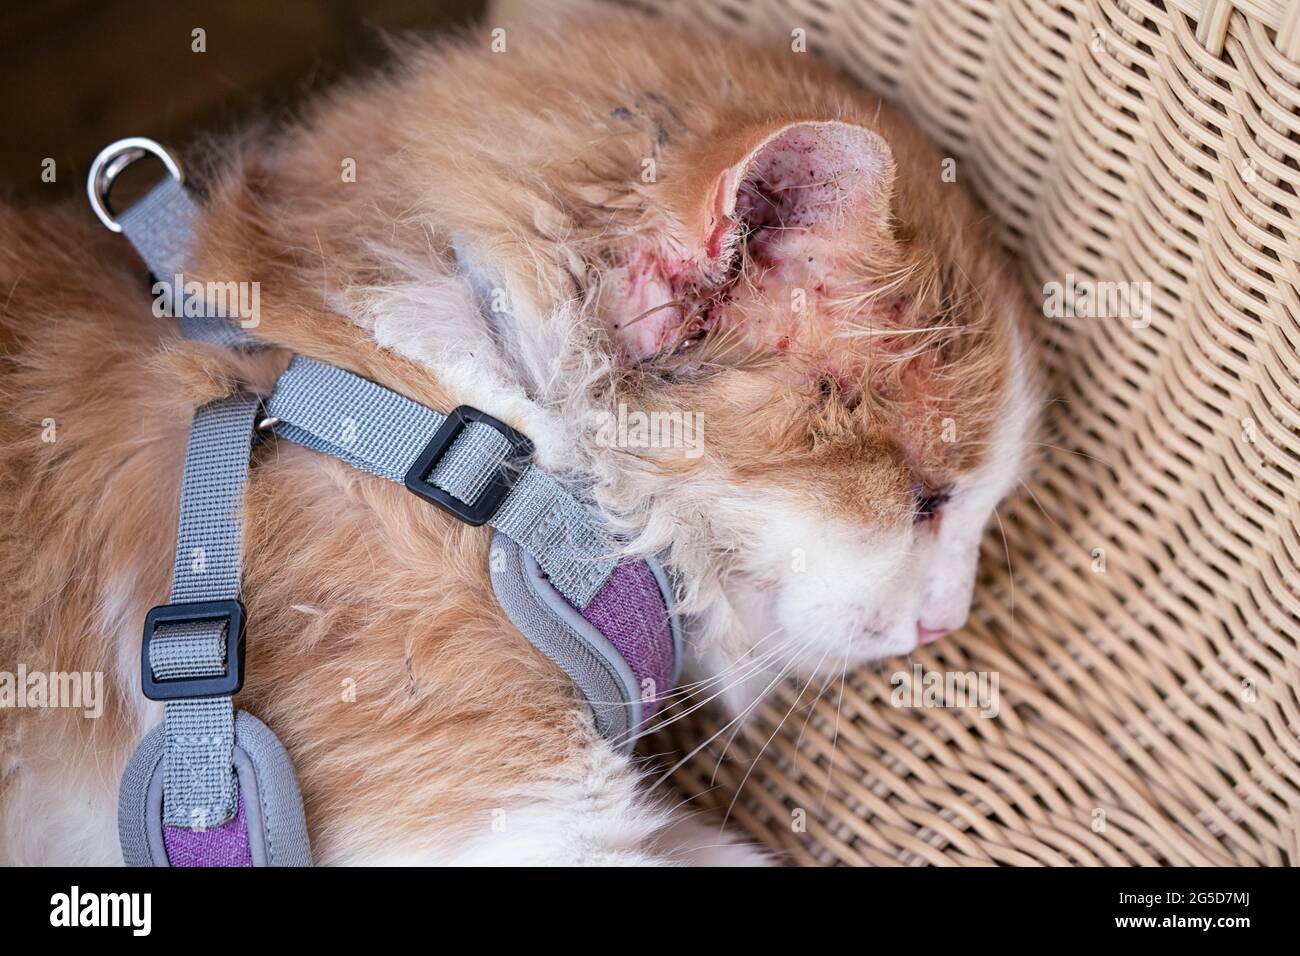 Erschöpfte verletzte Katze mit geschwollenem Auge und verkratztem verletzten Ohr liegt in Nahaufnahme. Stockfoto